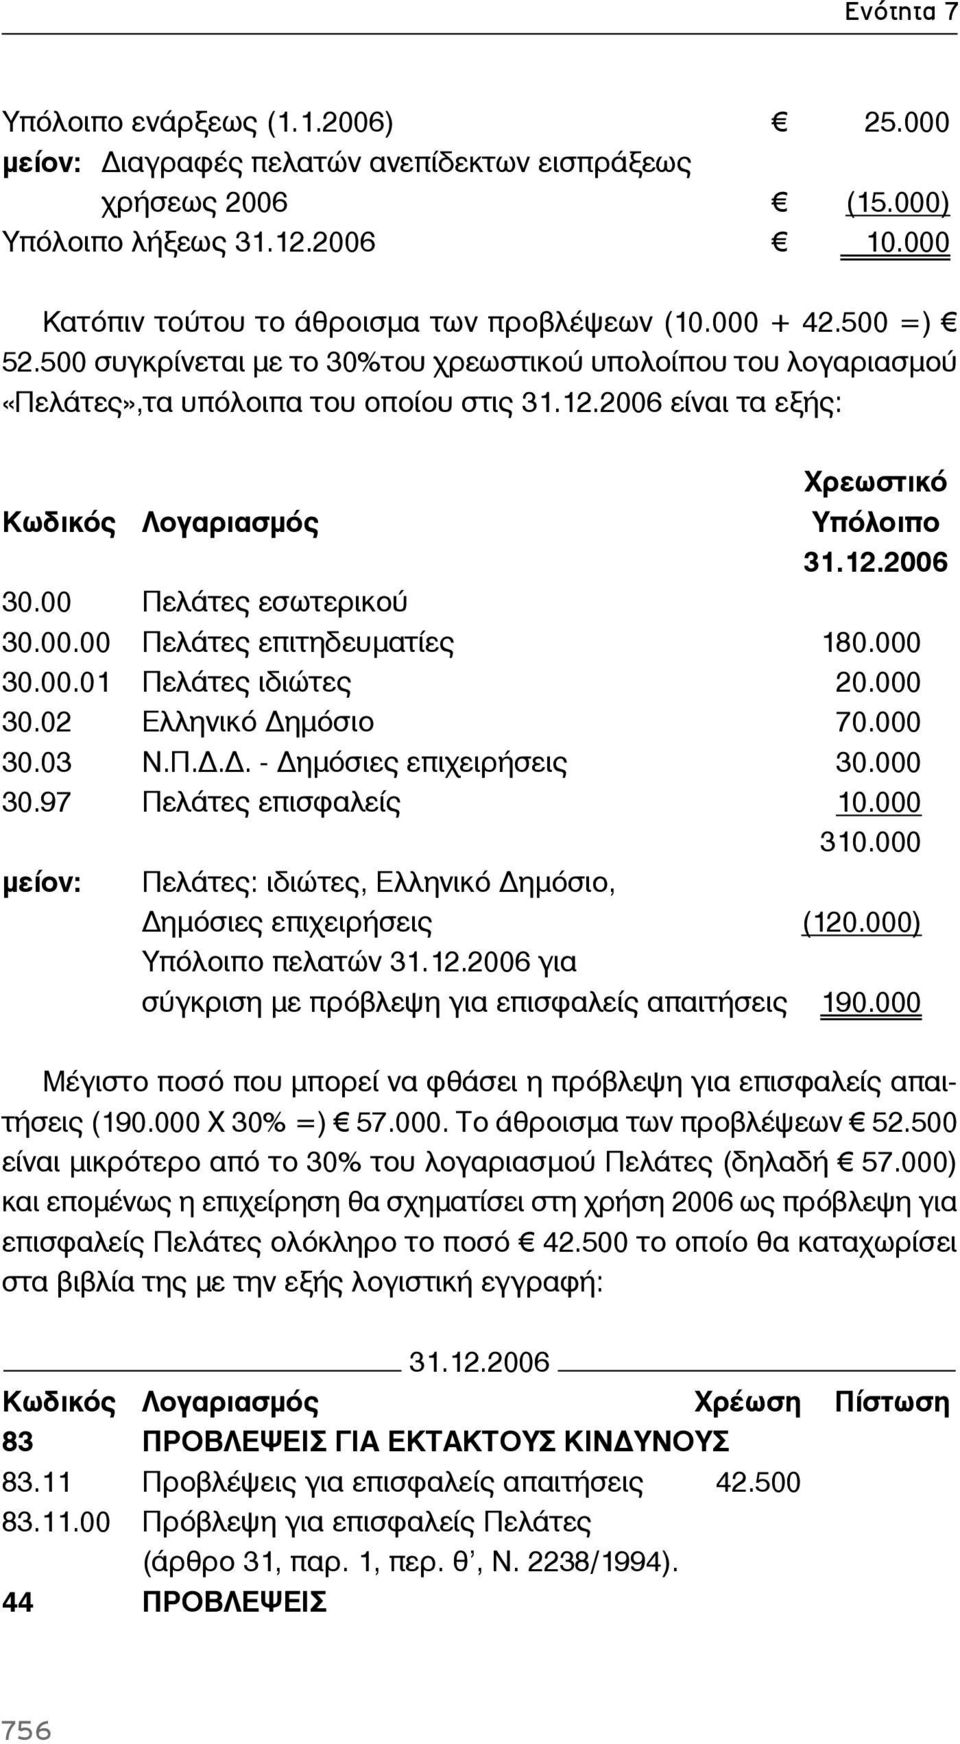 00 Πελάτες εσωτερικού 30.00.00 Πελάτες επιτηδευματίες 180.000 30.00.01 Πελάτες ιδιώτες 20.000 30.02 Ελληνικό ημόσιο 70.000 30.03 Ν.Π... - ημόσιες επιχειρήσεις 30.000 30.97 Πελάτες επισφαλείς 10.